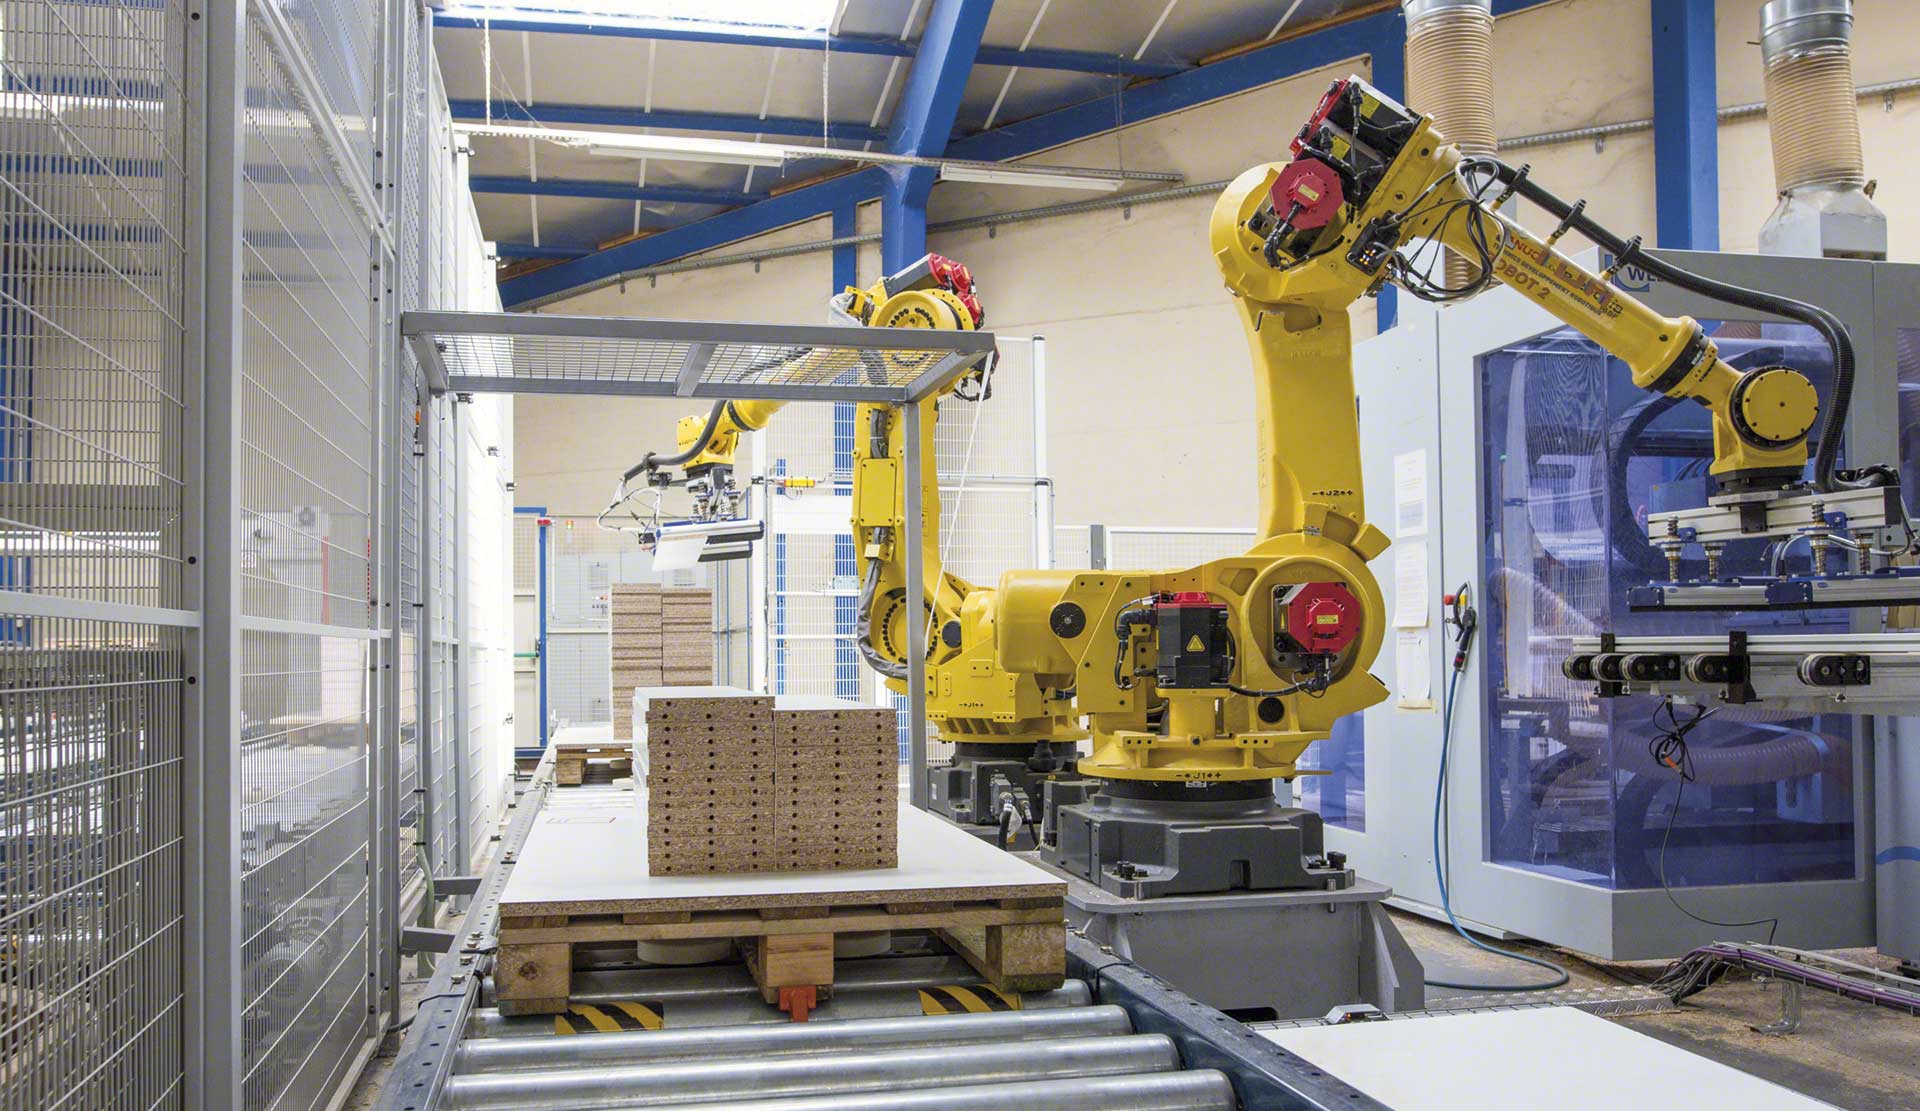 Industrielle Roboterarme erfüllen ähnliche Funktionen wie menschliche Arme